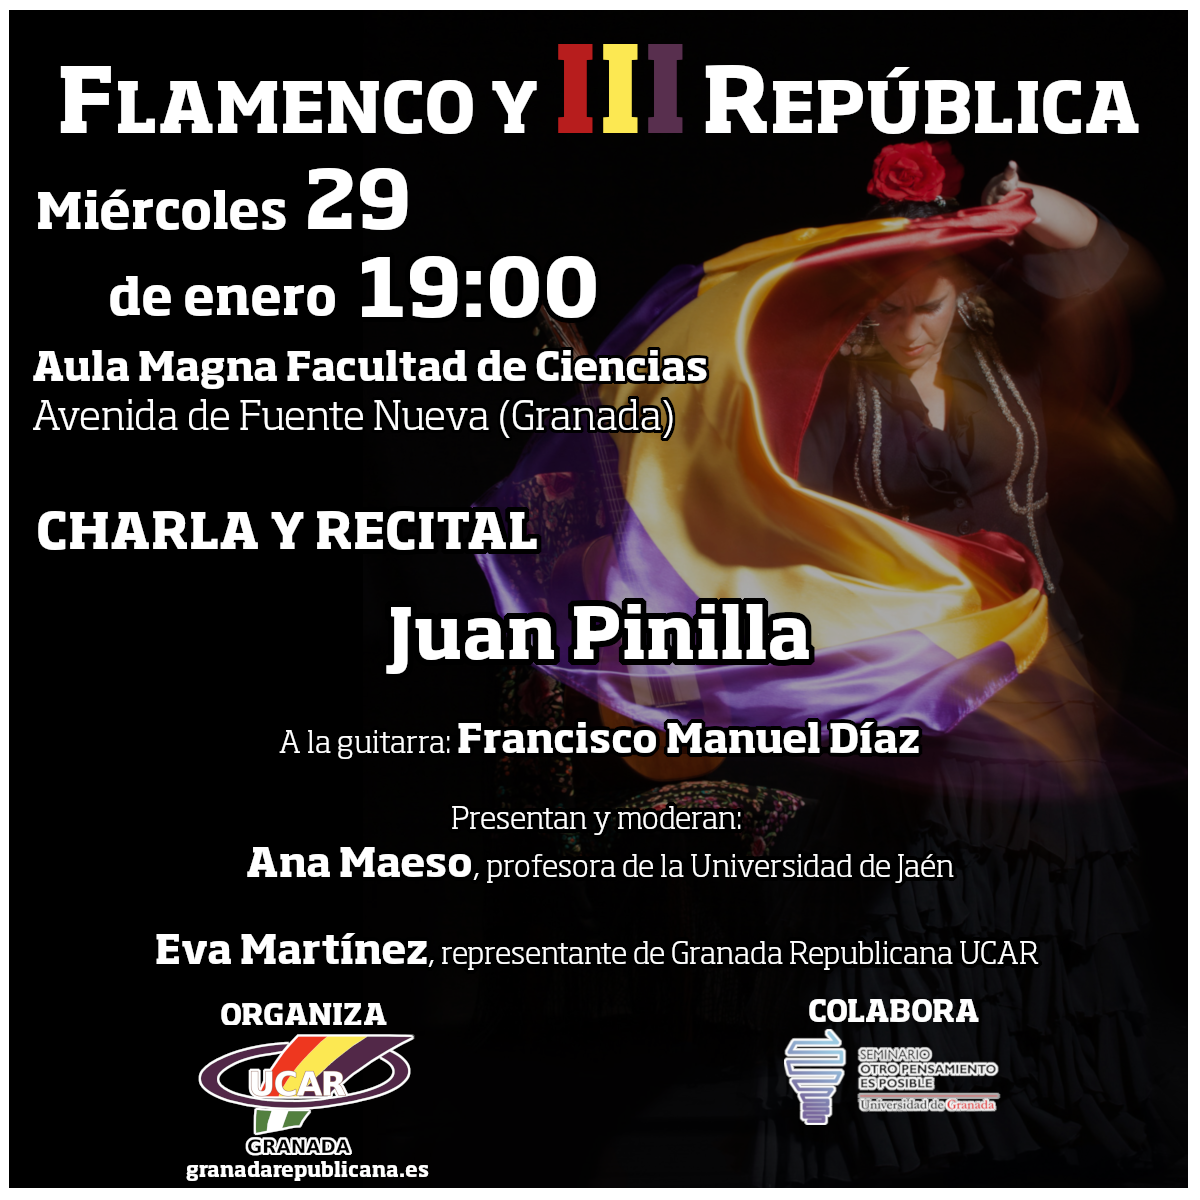 Flamenco y III República